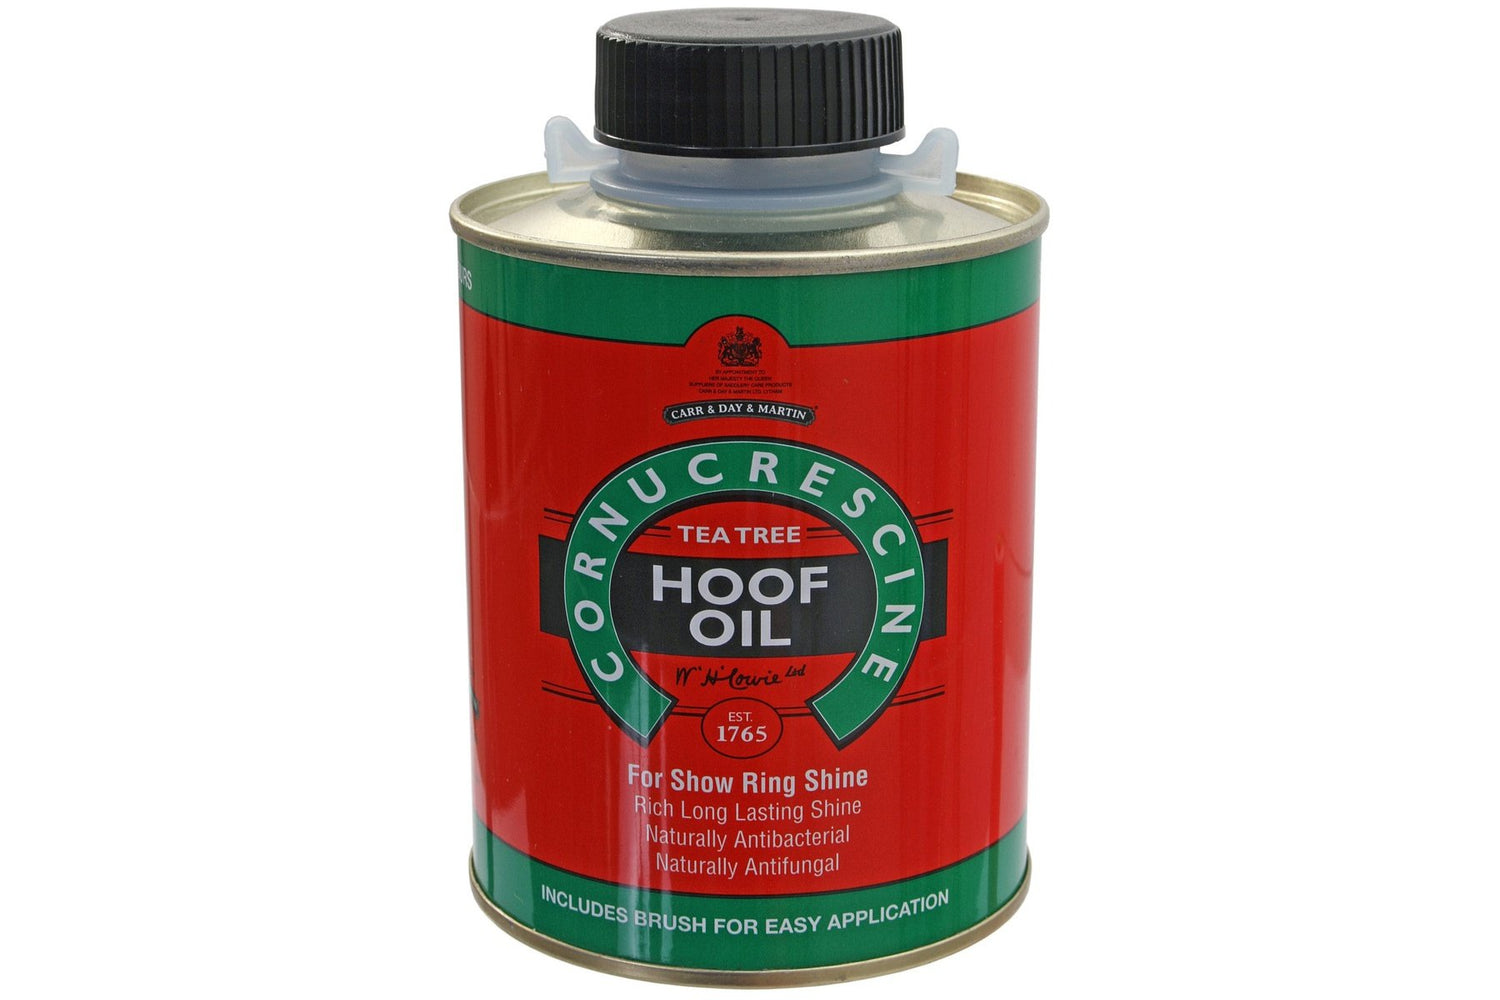 Cornucrescine Tea Tree Hoof Oil